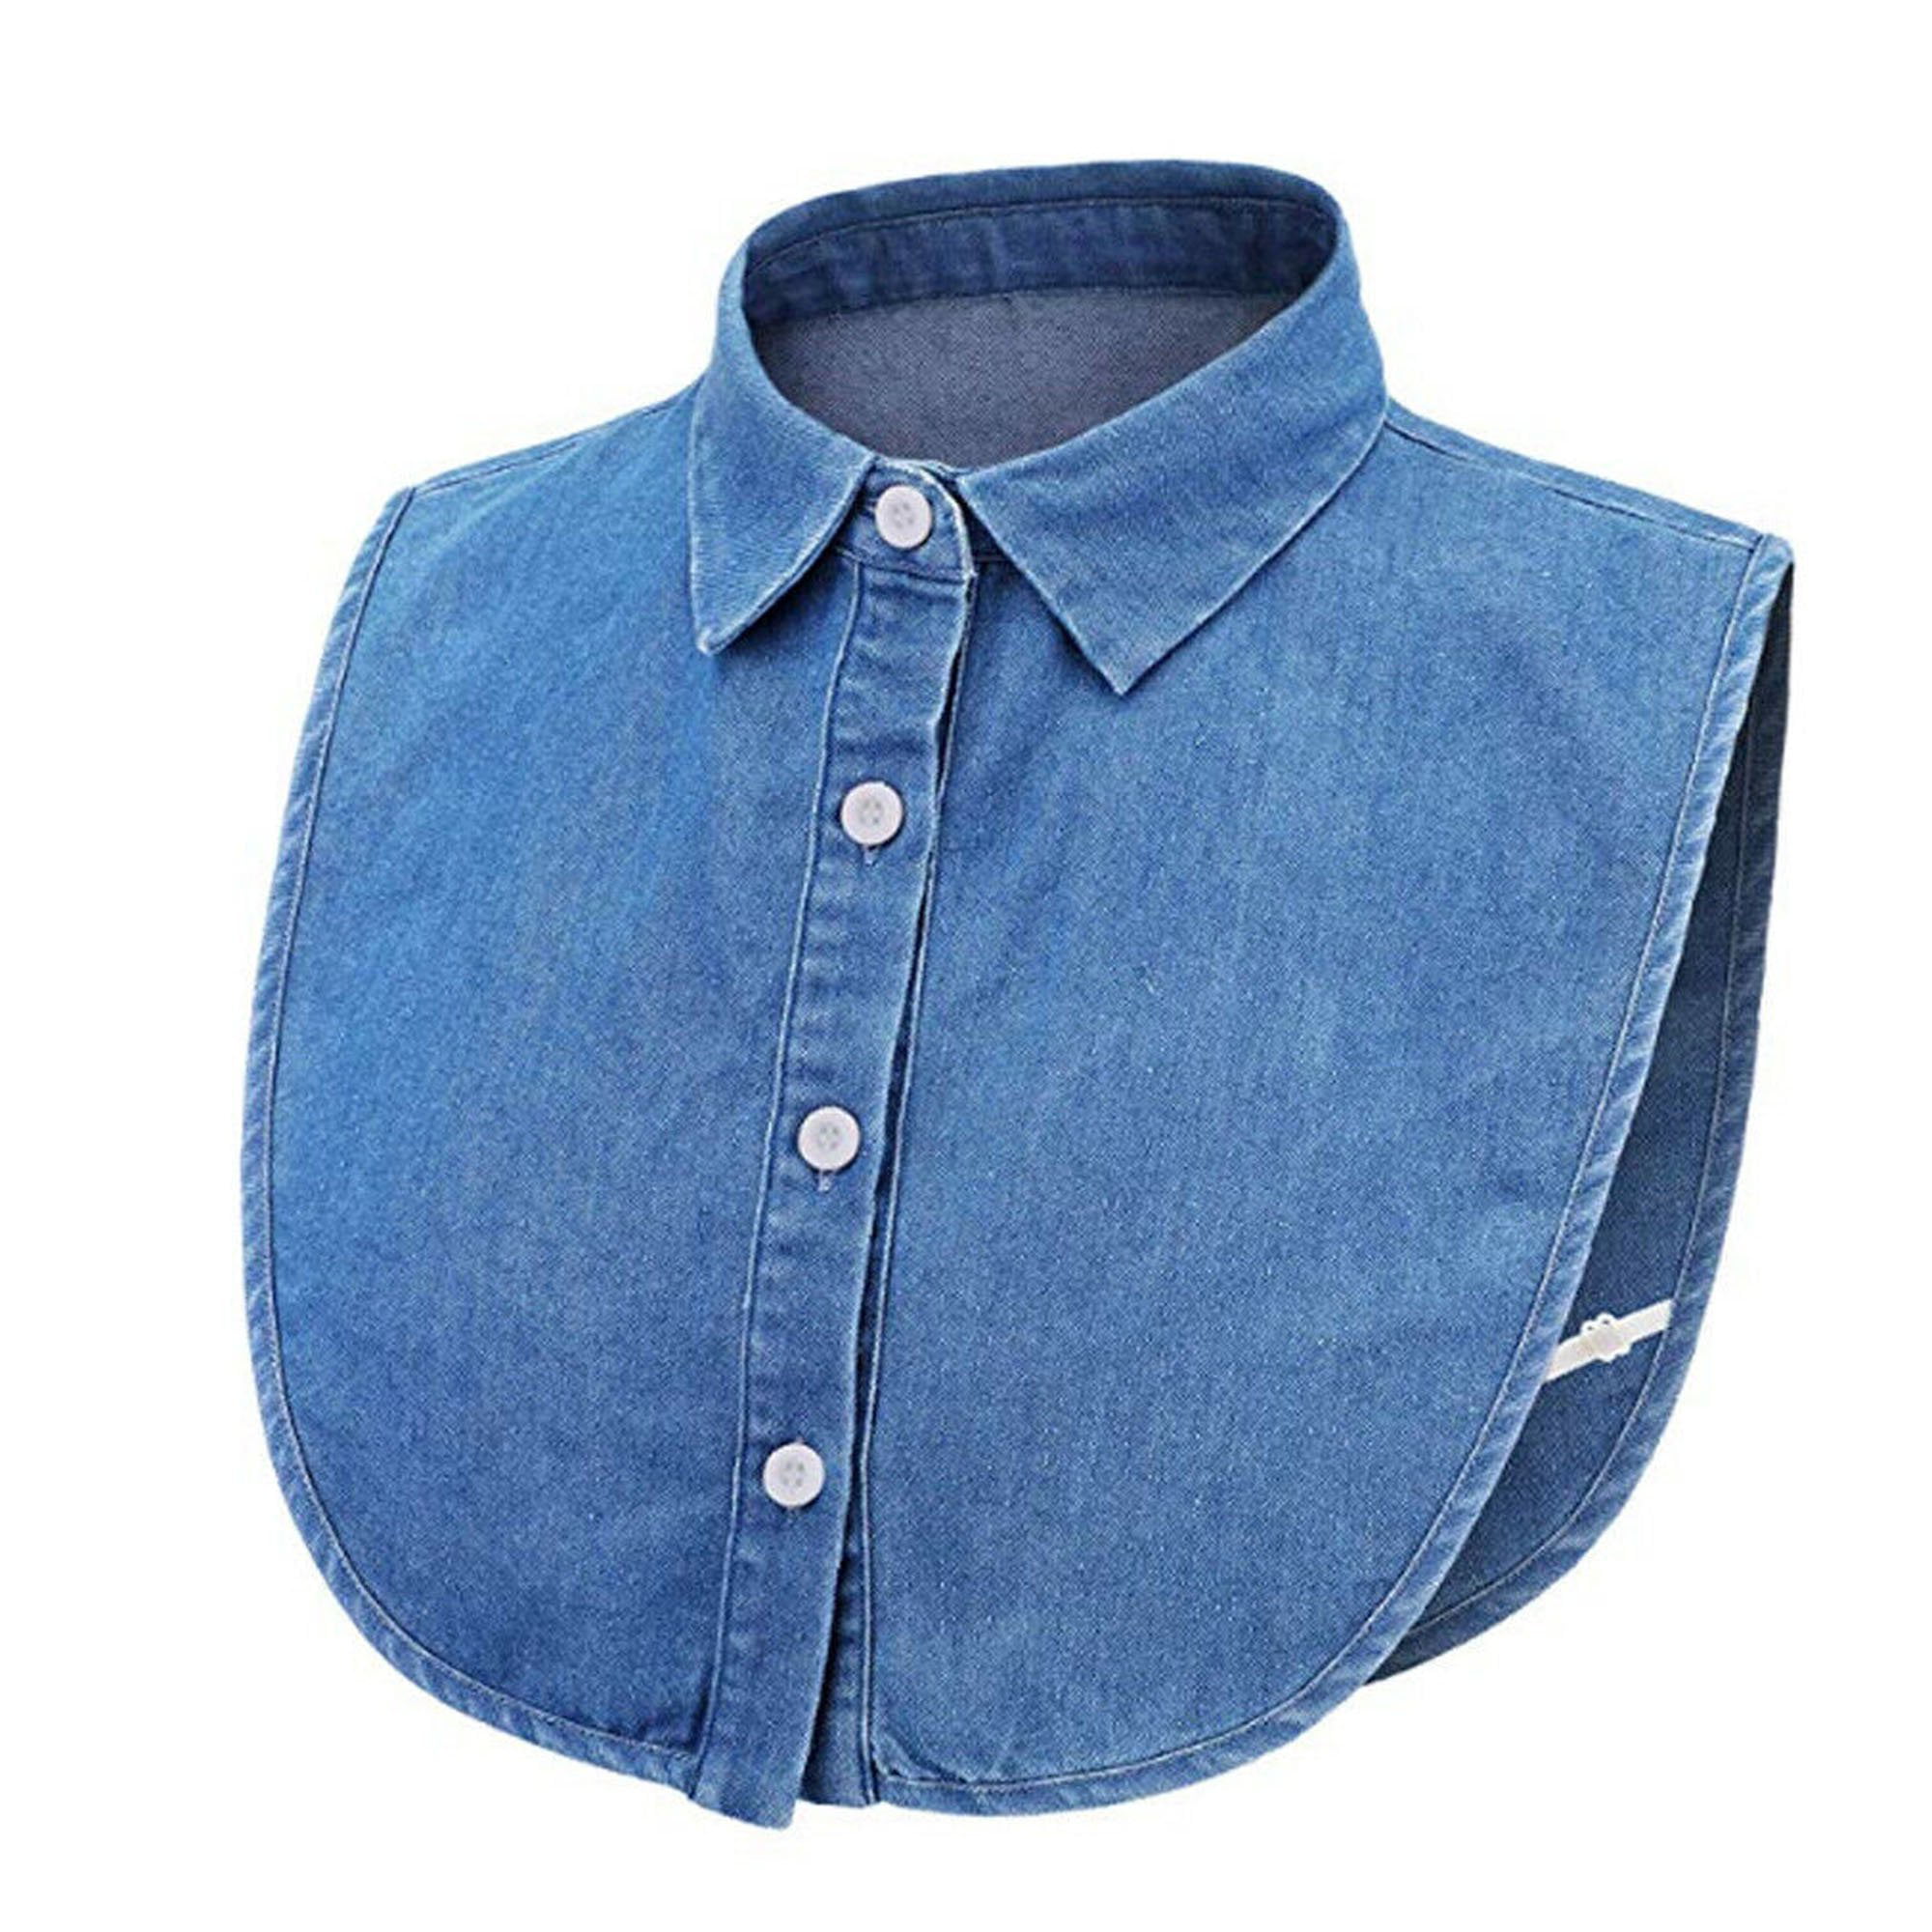 daar ben ik het mee eens thee dozijn 2 X Fake Collar Detachable Dickey Collar Blouse Half Shirts Peter Pan Faux  False Collar for Women Girls,Cotton(Blue) - Walmart.com